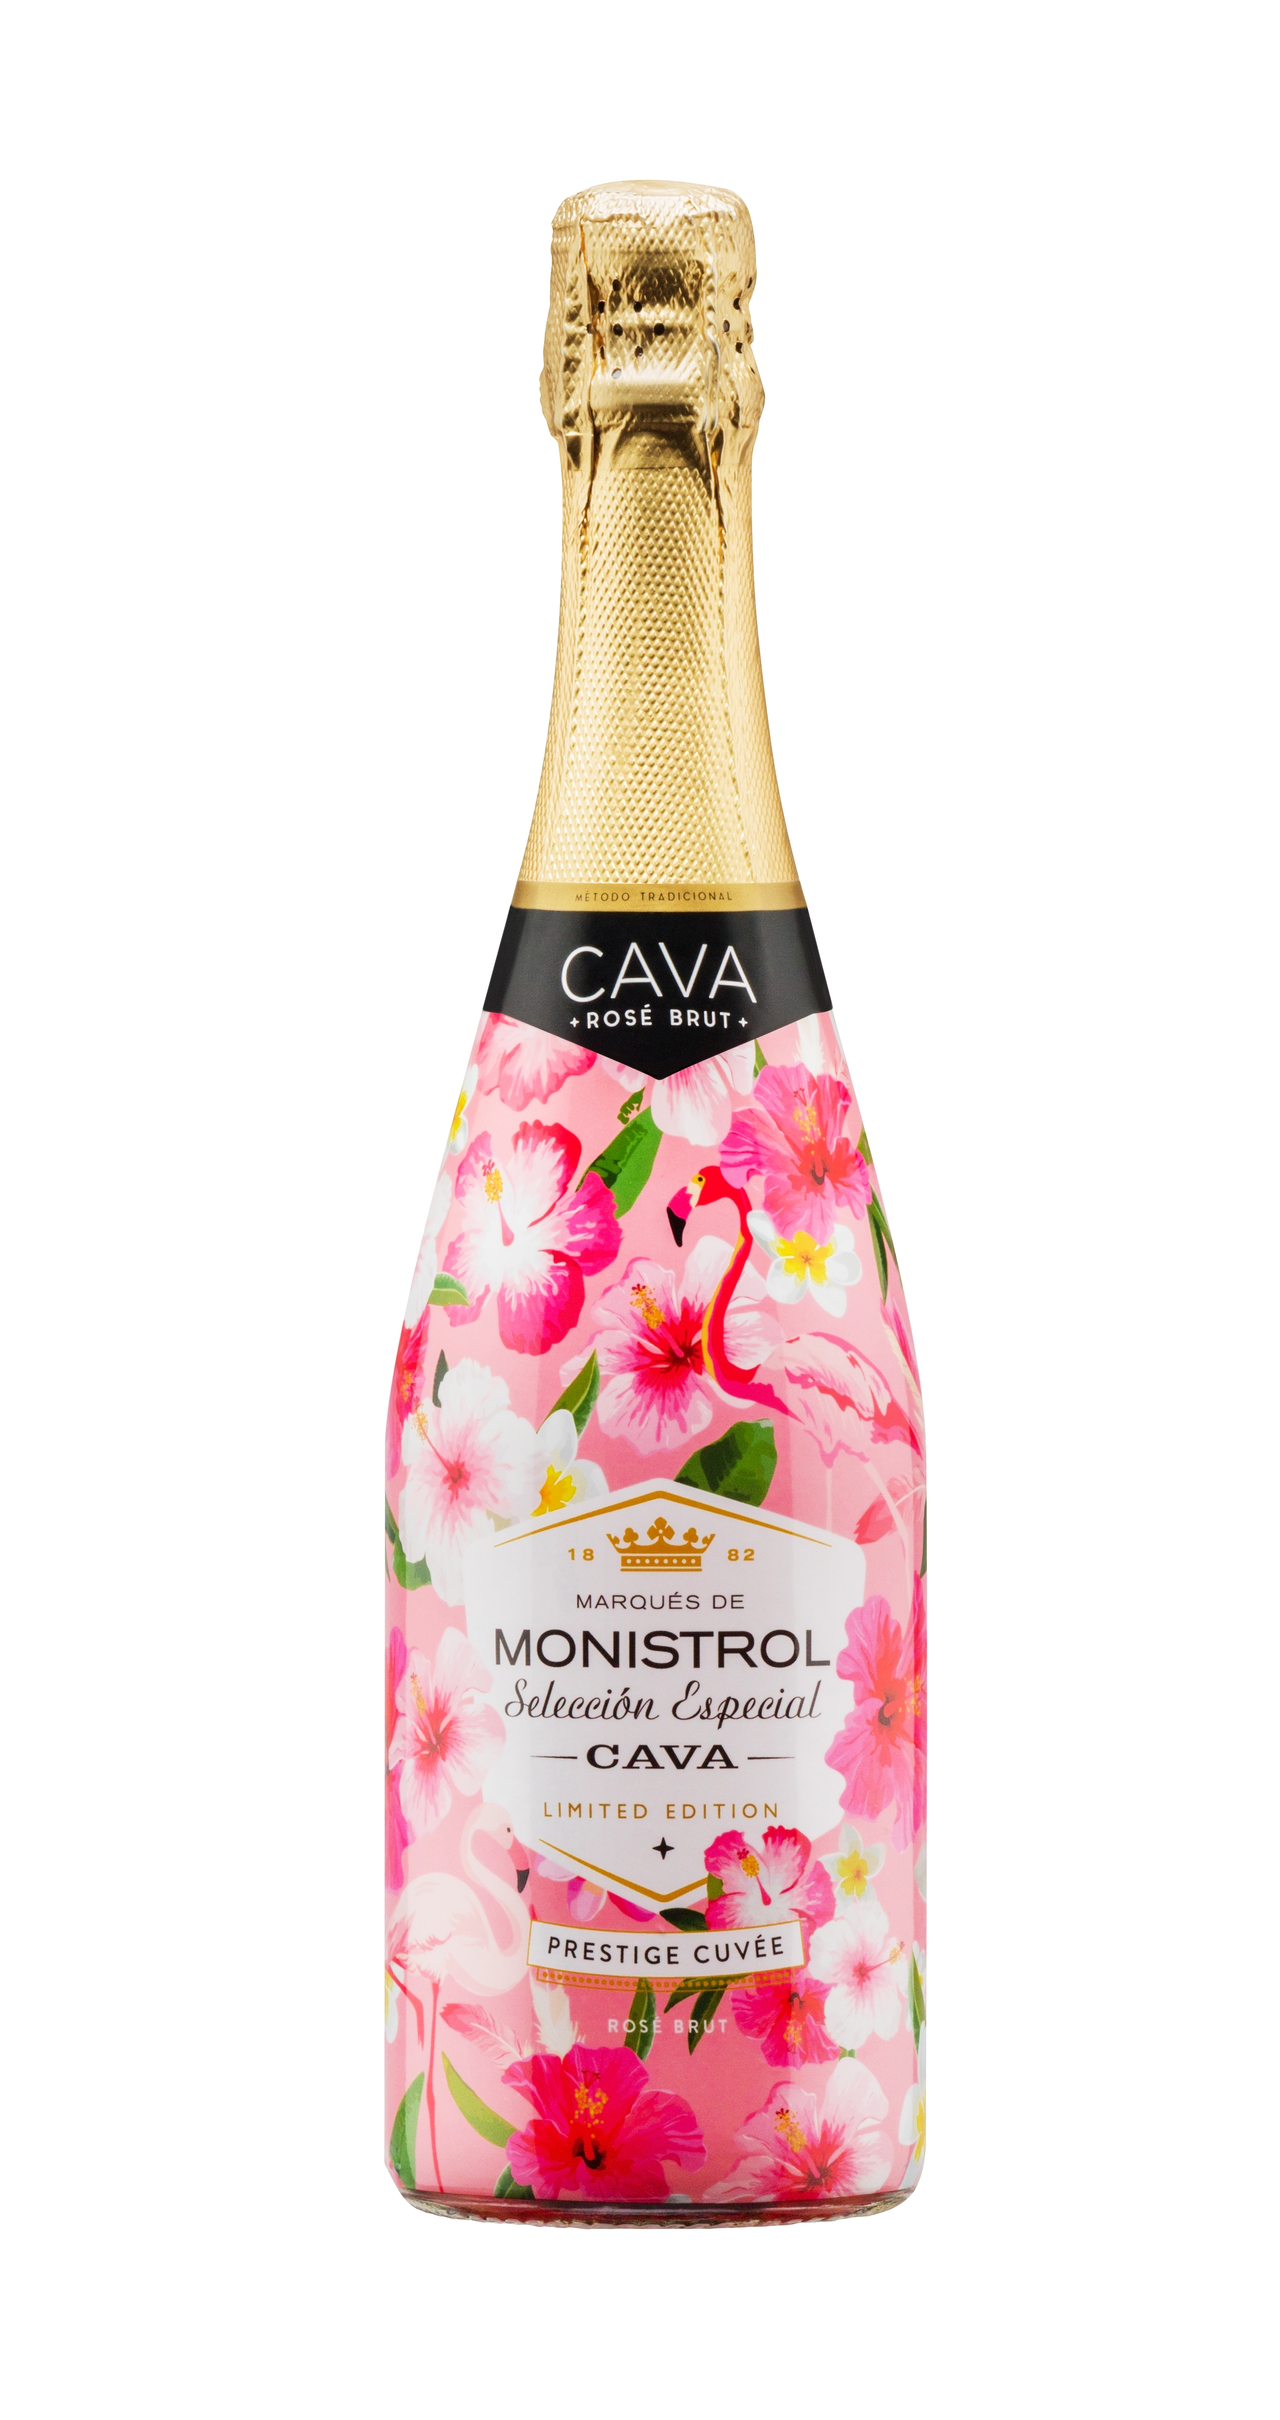 Жардан флери. Шампанское Cava Monistrol. Шампанское Monistrol Cava seleccion especial. Вино игристое Monistrol Cava розовое брют, 0.75л. Шампанское Cava Monistrol брют.